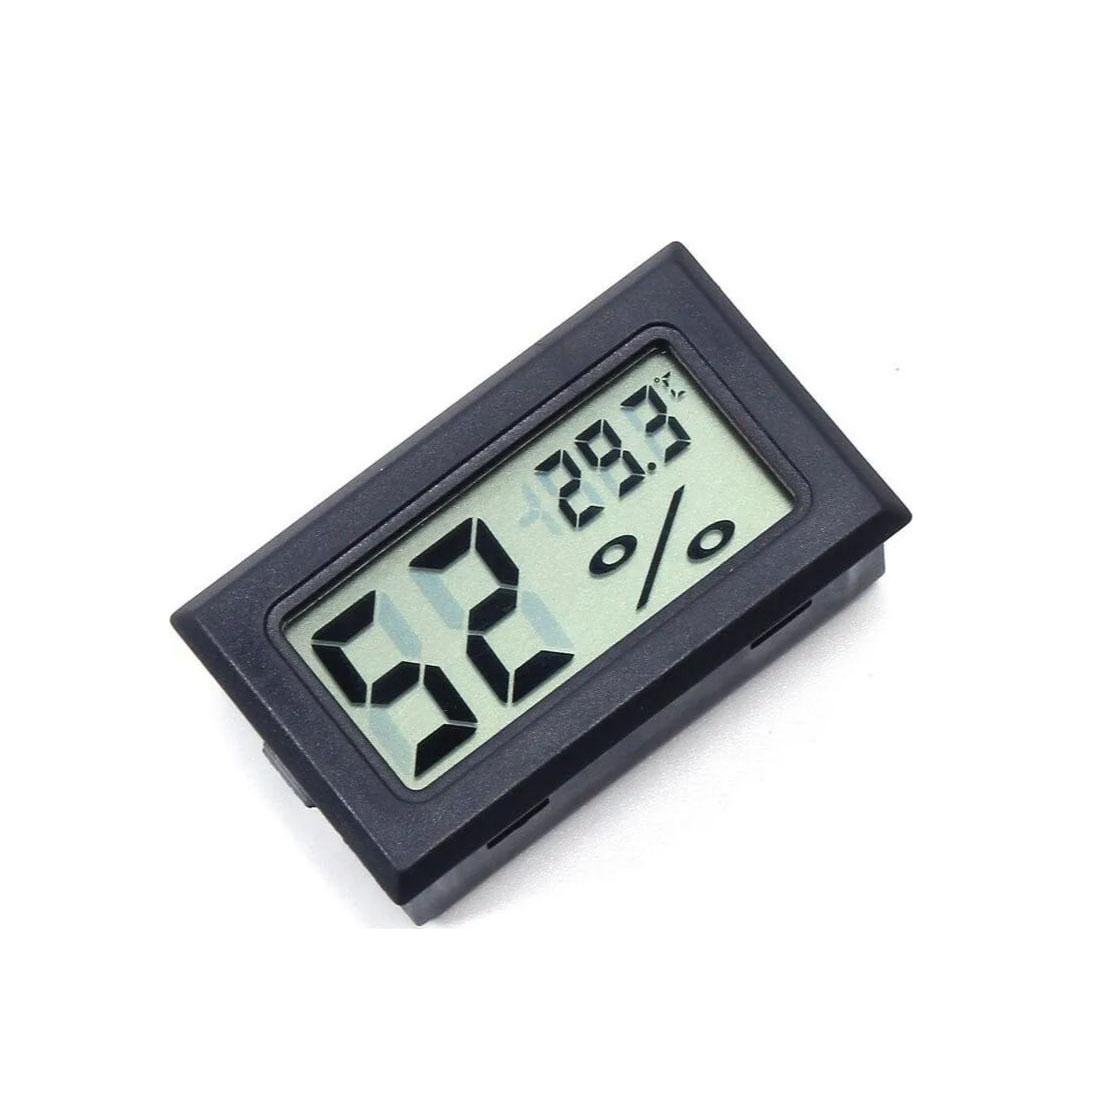 Купить Термометр-гигрометр HT-2 (FY-11) черный в Челябинске